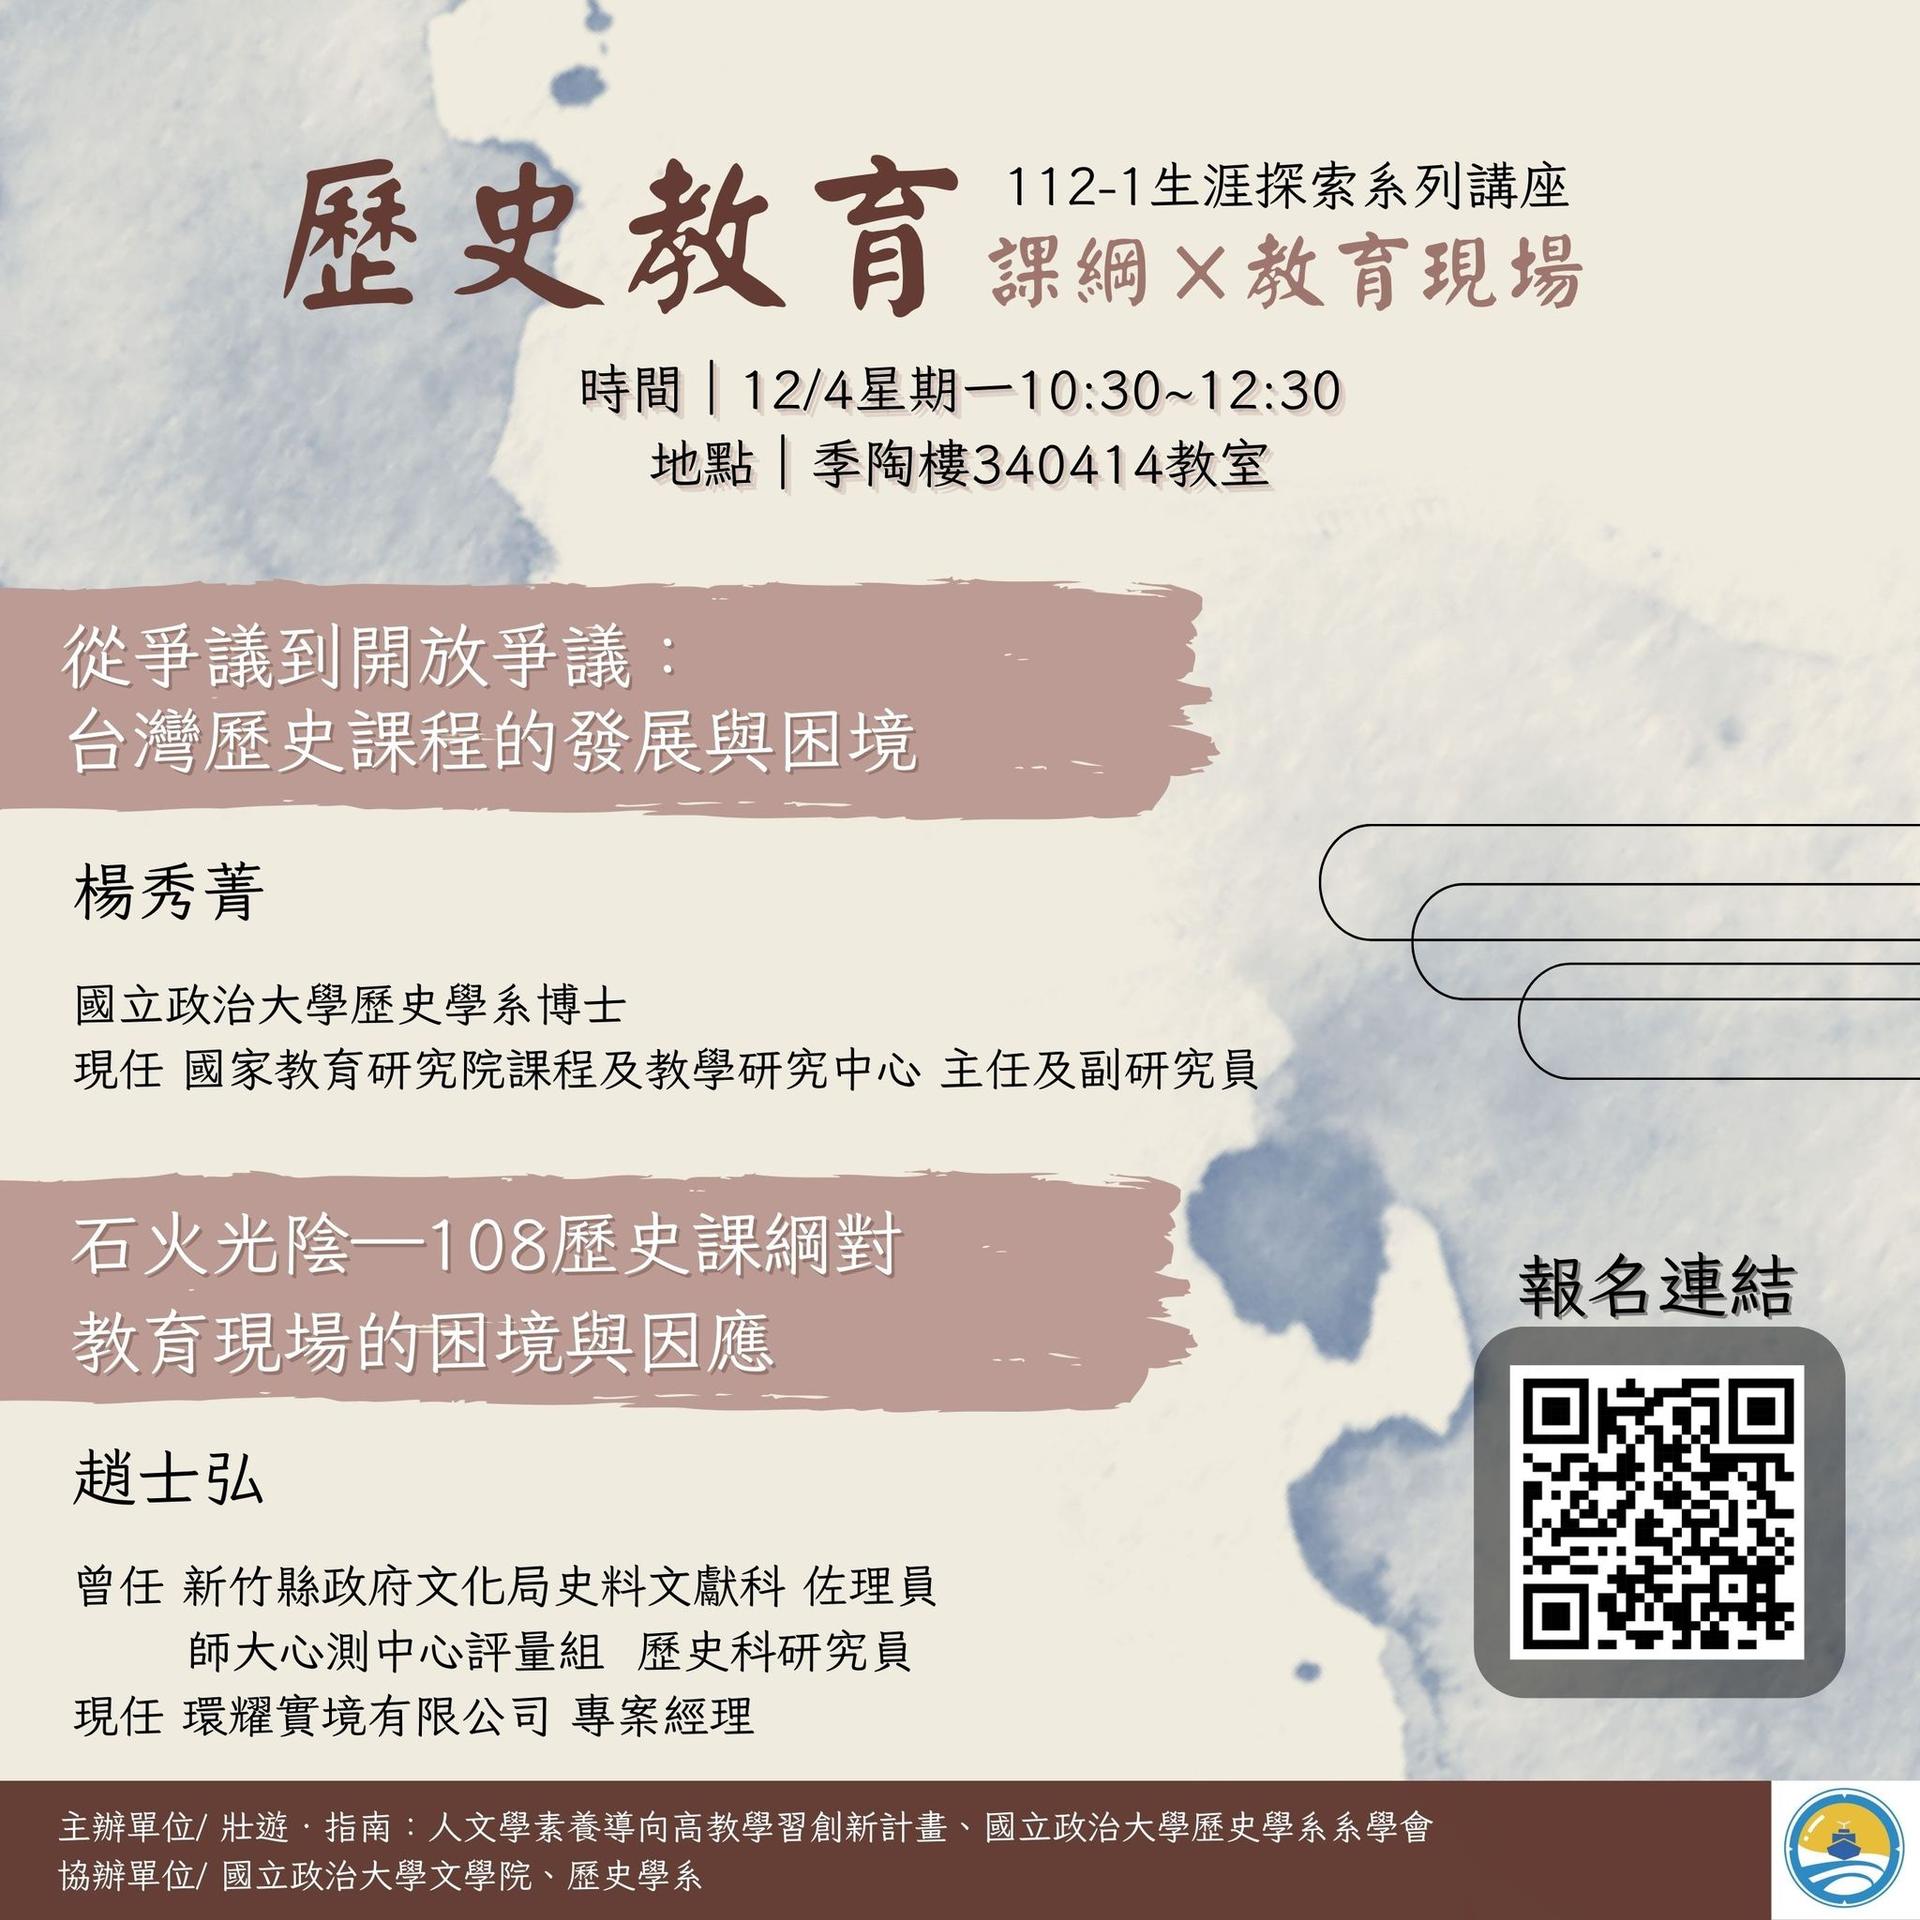 112.12.04  從爭議到開放爭議:台灣歷史課程的發展與困境